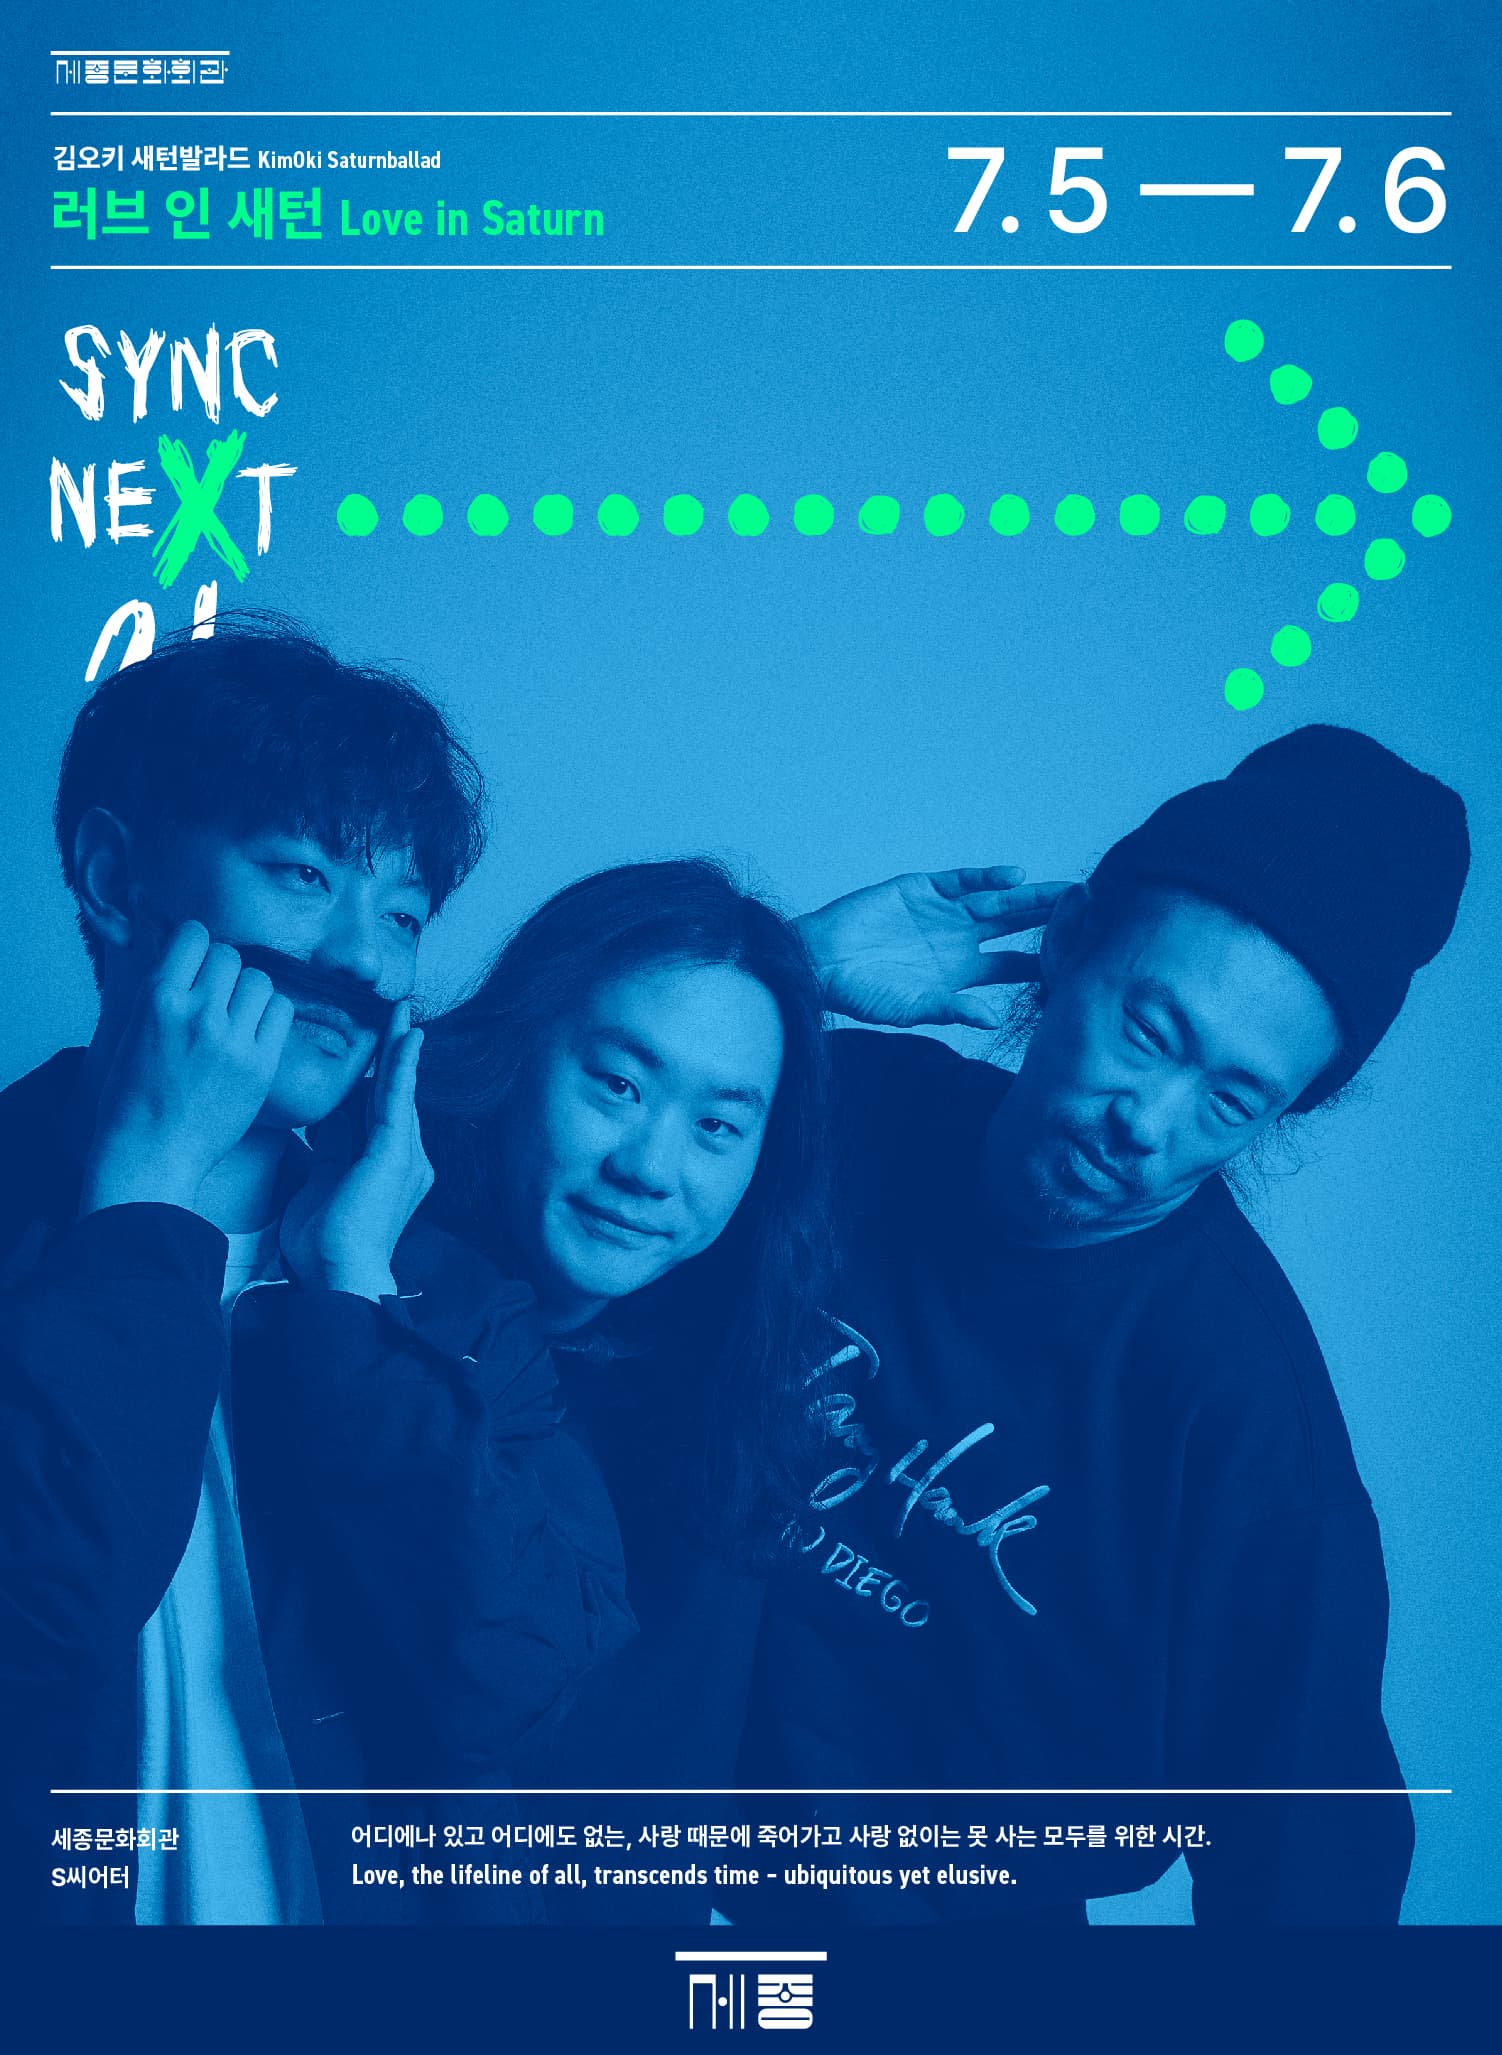 김오키 새턴발라드 <러브 인 새턴> - Sync Next 24